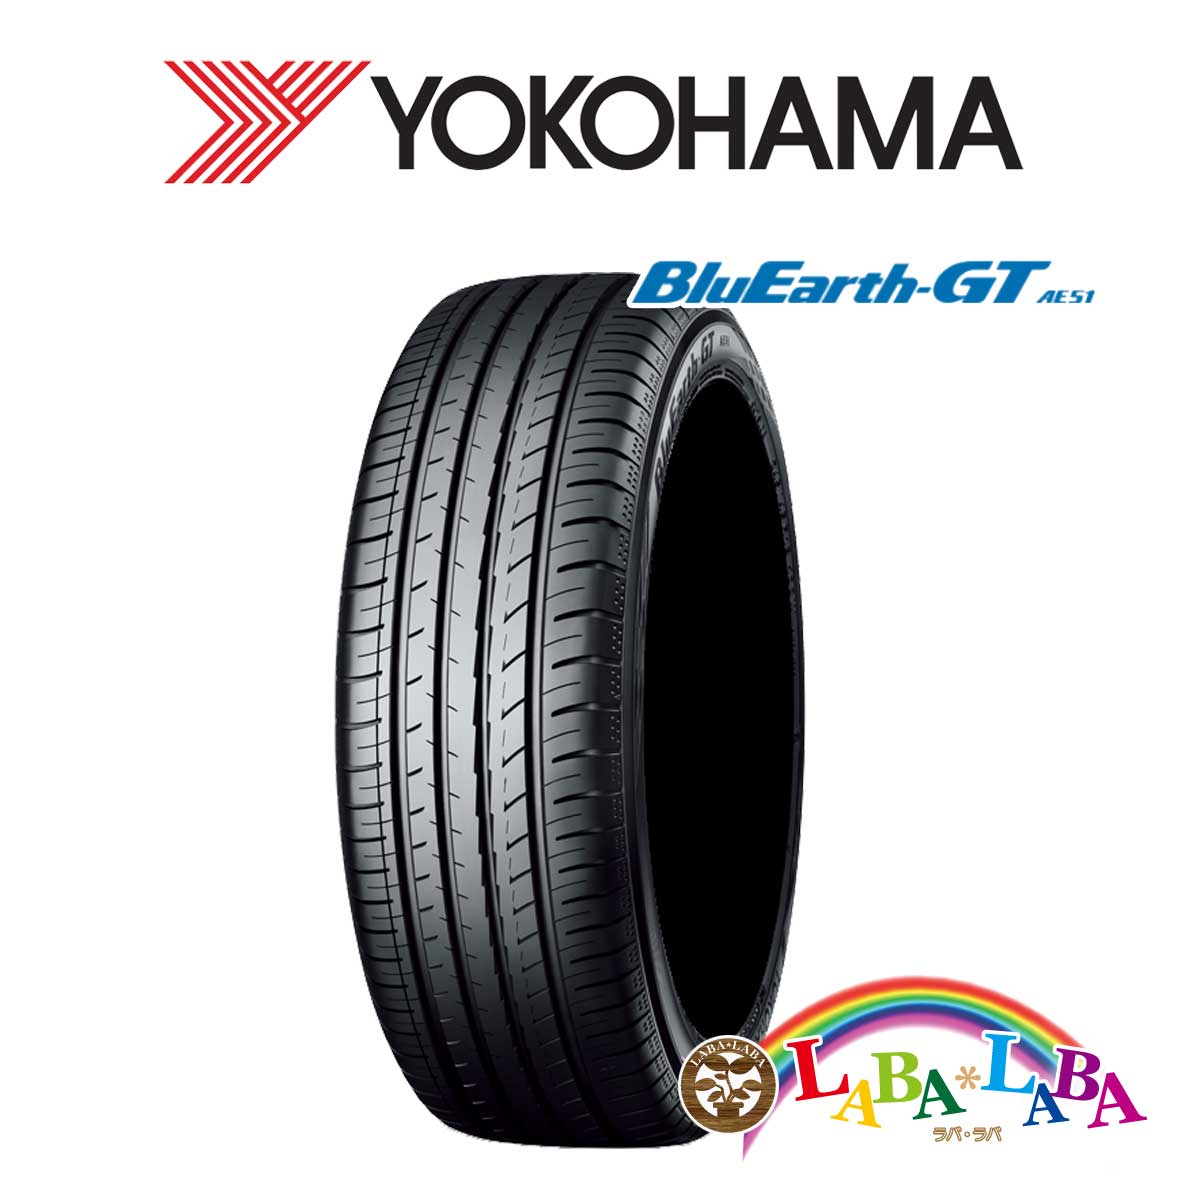 送料無料 国産タイヤ サマータイヤ 新品 タイヤのみ Rakuten 4本SET YOKOHAMA ヨコハマ AE51 BluEarth-GT 87V 4本セット 195 55R16 ブルーアース 殿堂